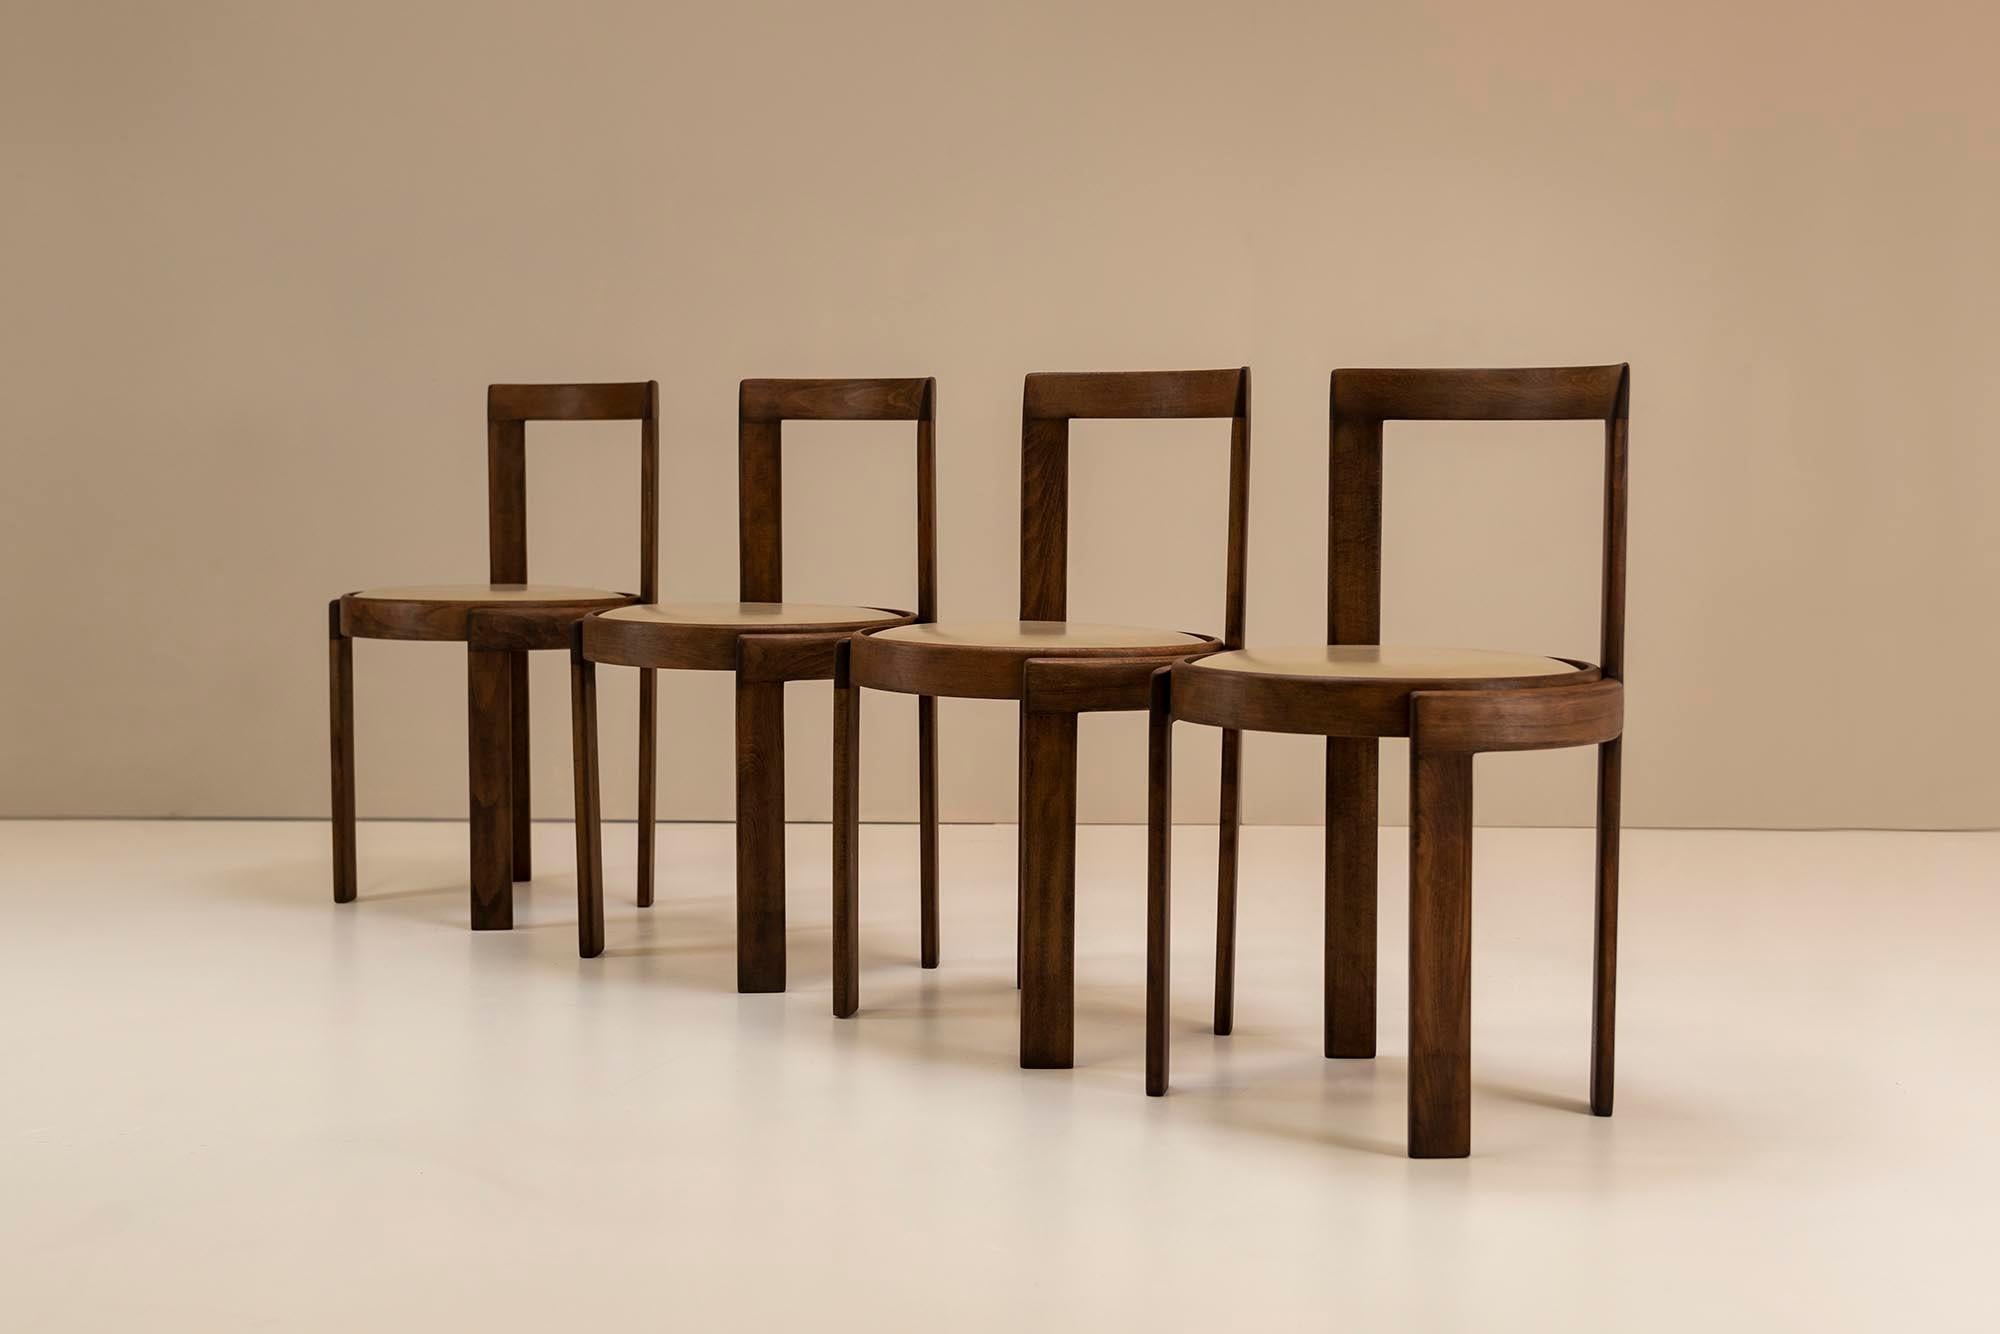 Schöne italienische modernistische restaurierte Esszimmerstühle aus Eschenholz und Kunstleder aus den 1960er Jahren. Eschenholz ist eine sehr solide Holzart mit einer charakteristischen offenen Struktur und lässt sich nach dem Dämpfen leicht biegen,